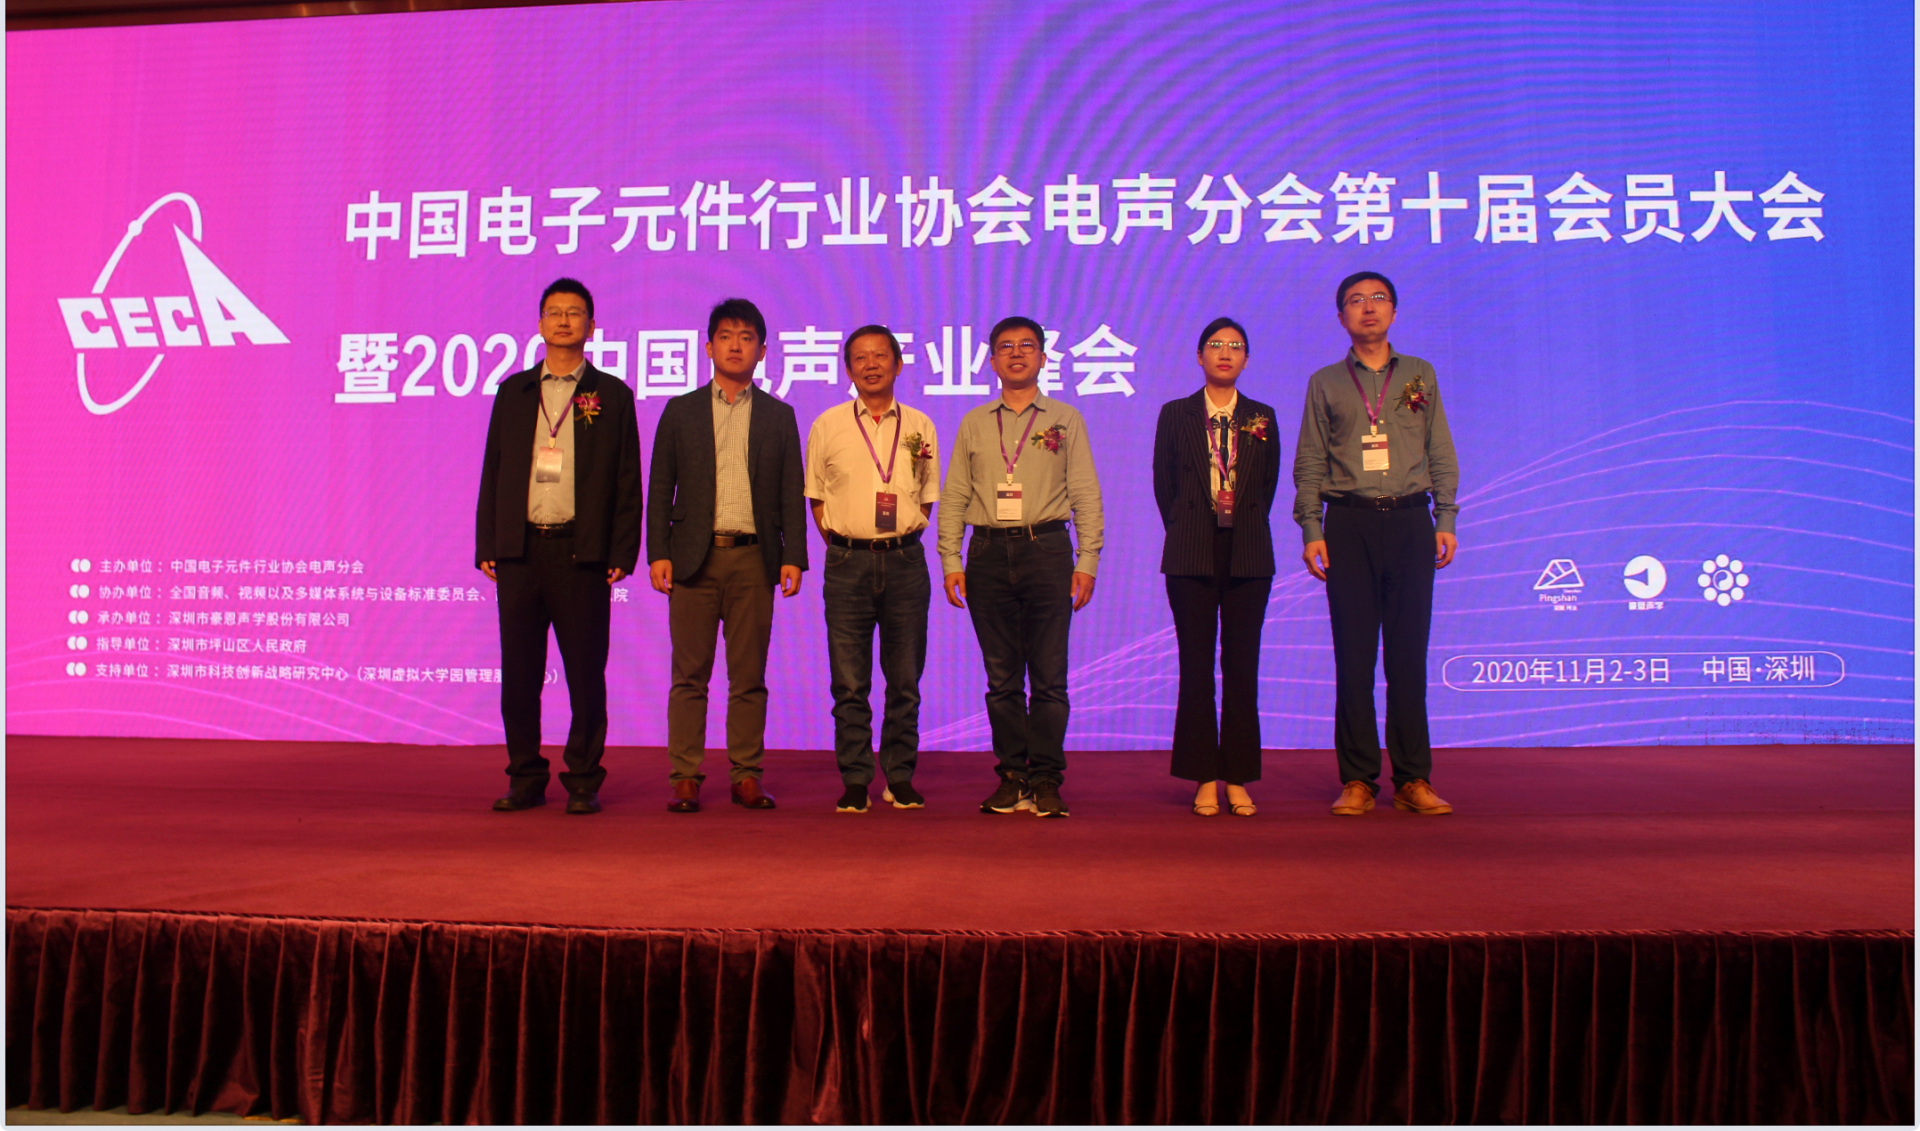 2020中国电声产业峰会在坪山举办，百余家行业领军企业共议声学新发展  